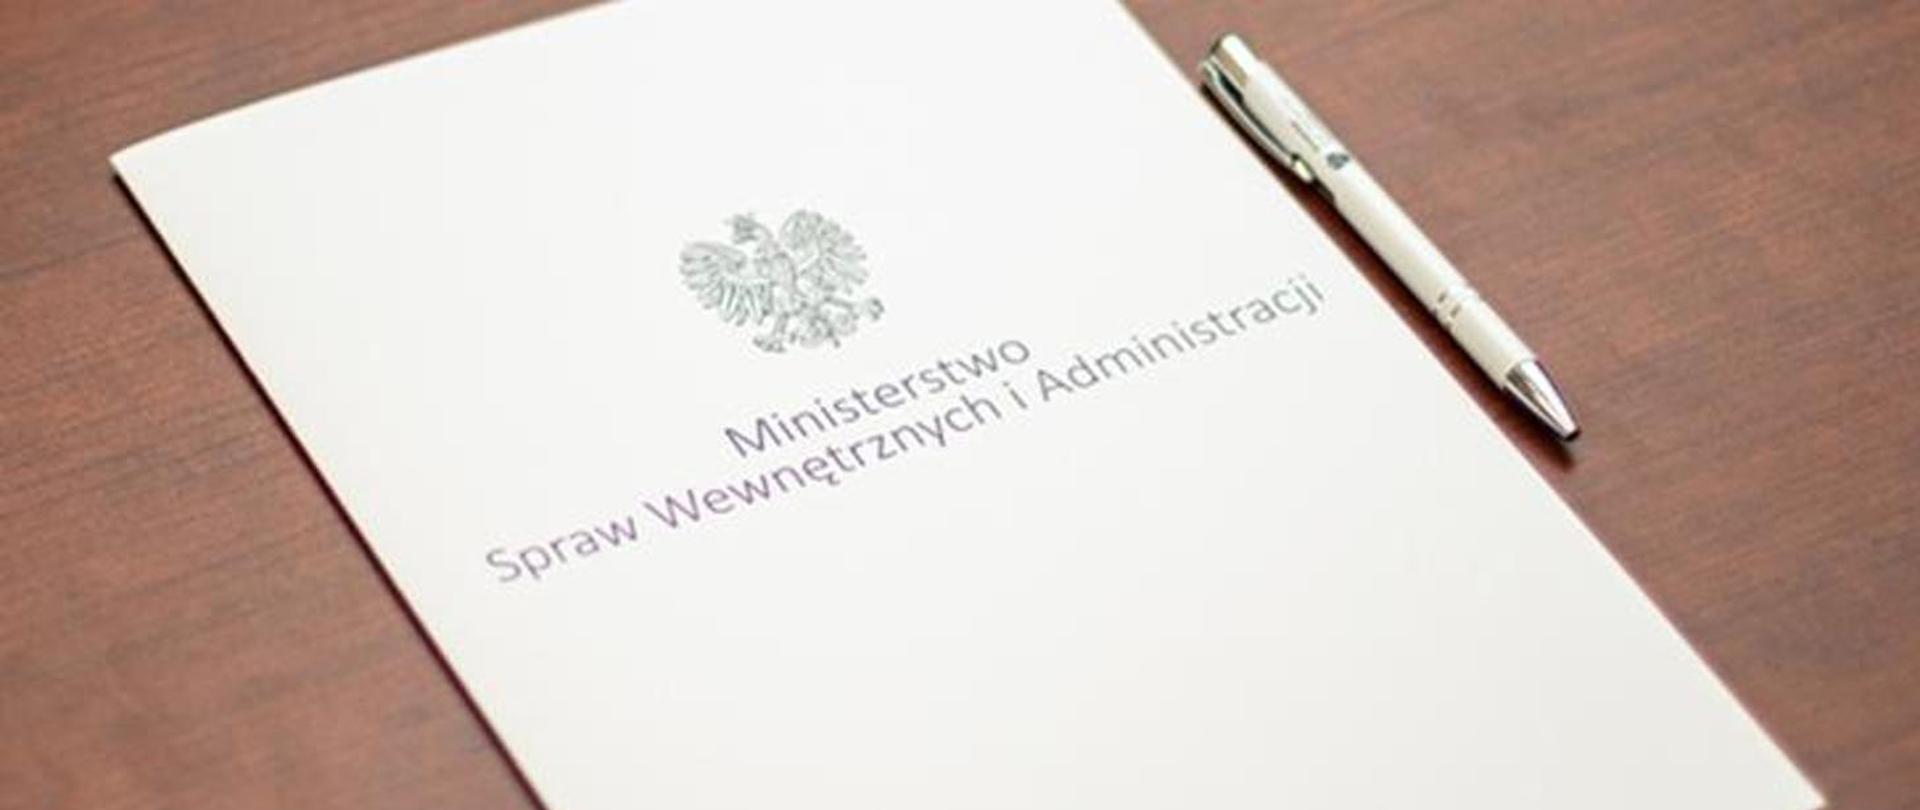 Na zdjęciu widać teczkę na dokumenty z napisem Ministerstwo Spraw Wewnętrznych i Administracji, która leży na stoliku a obok niej położony jest długopis